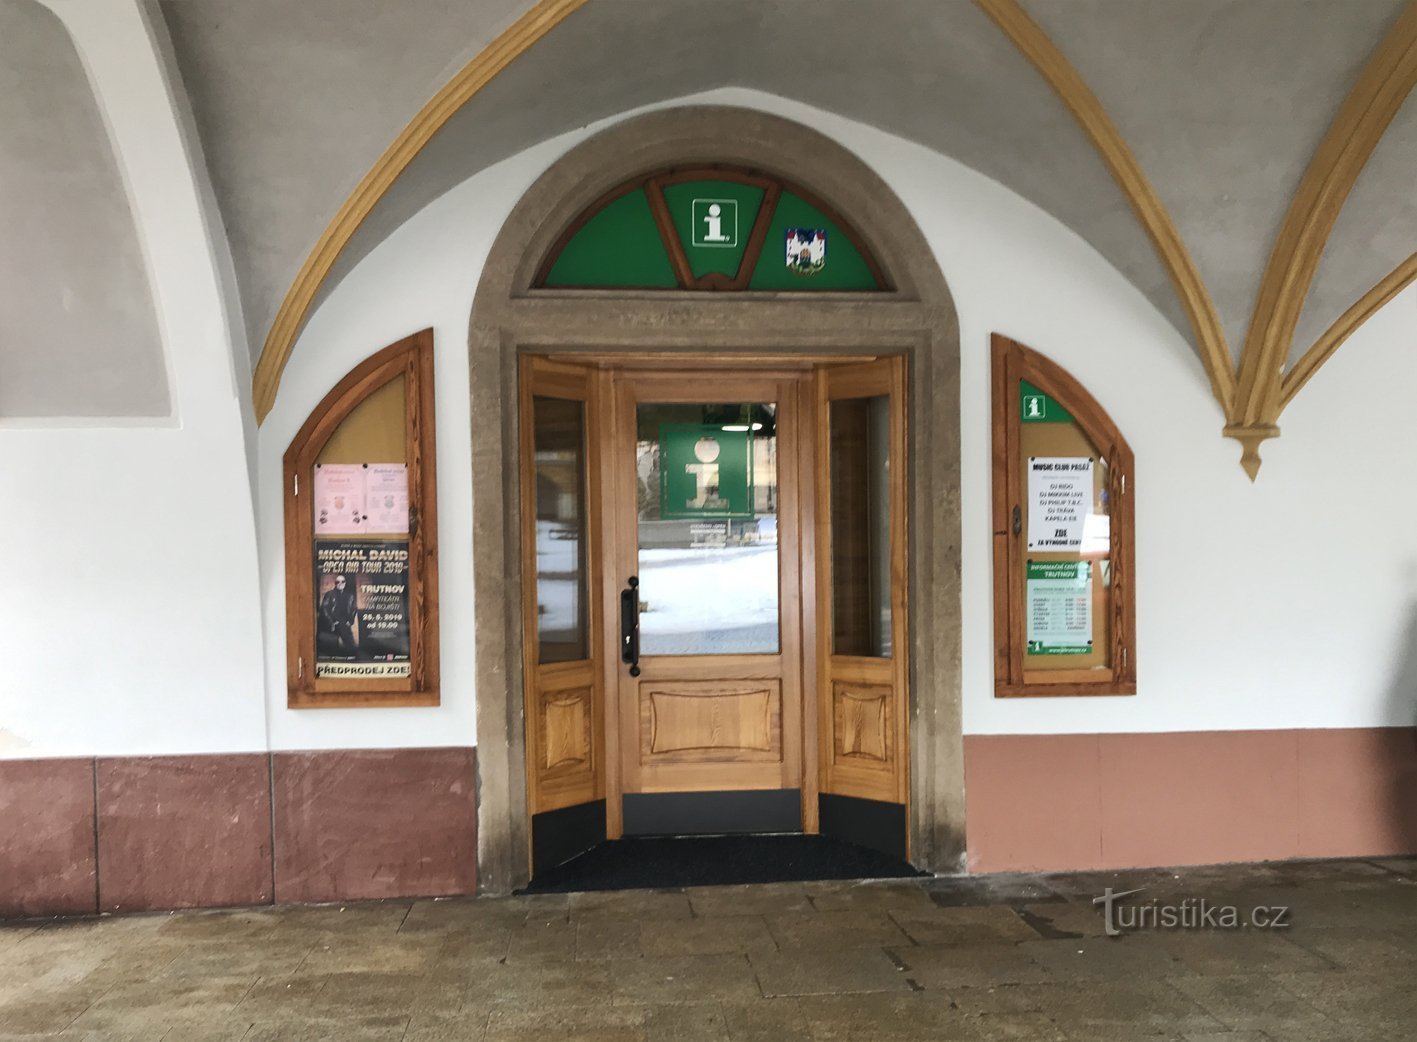 Entrance to TIC Trutnov